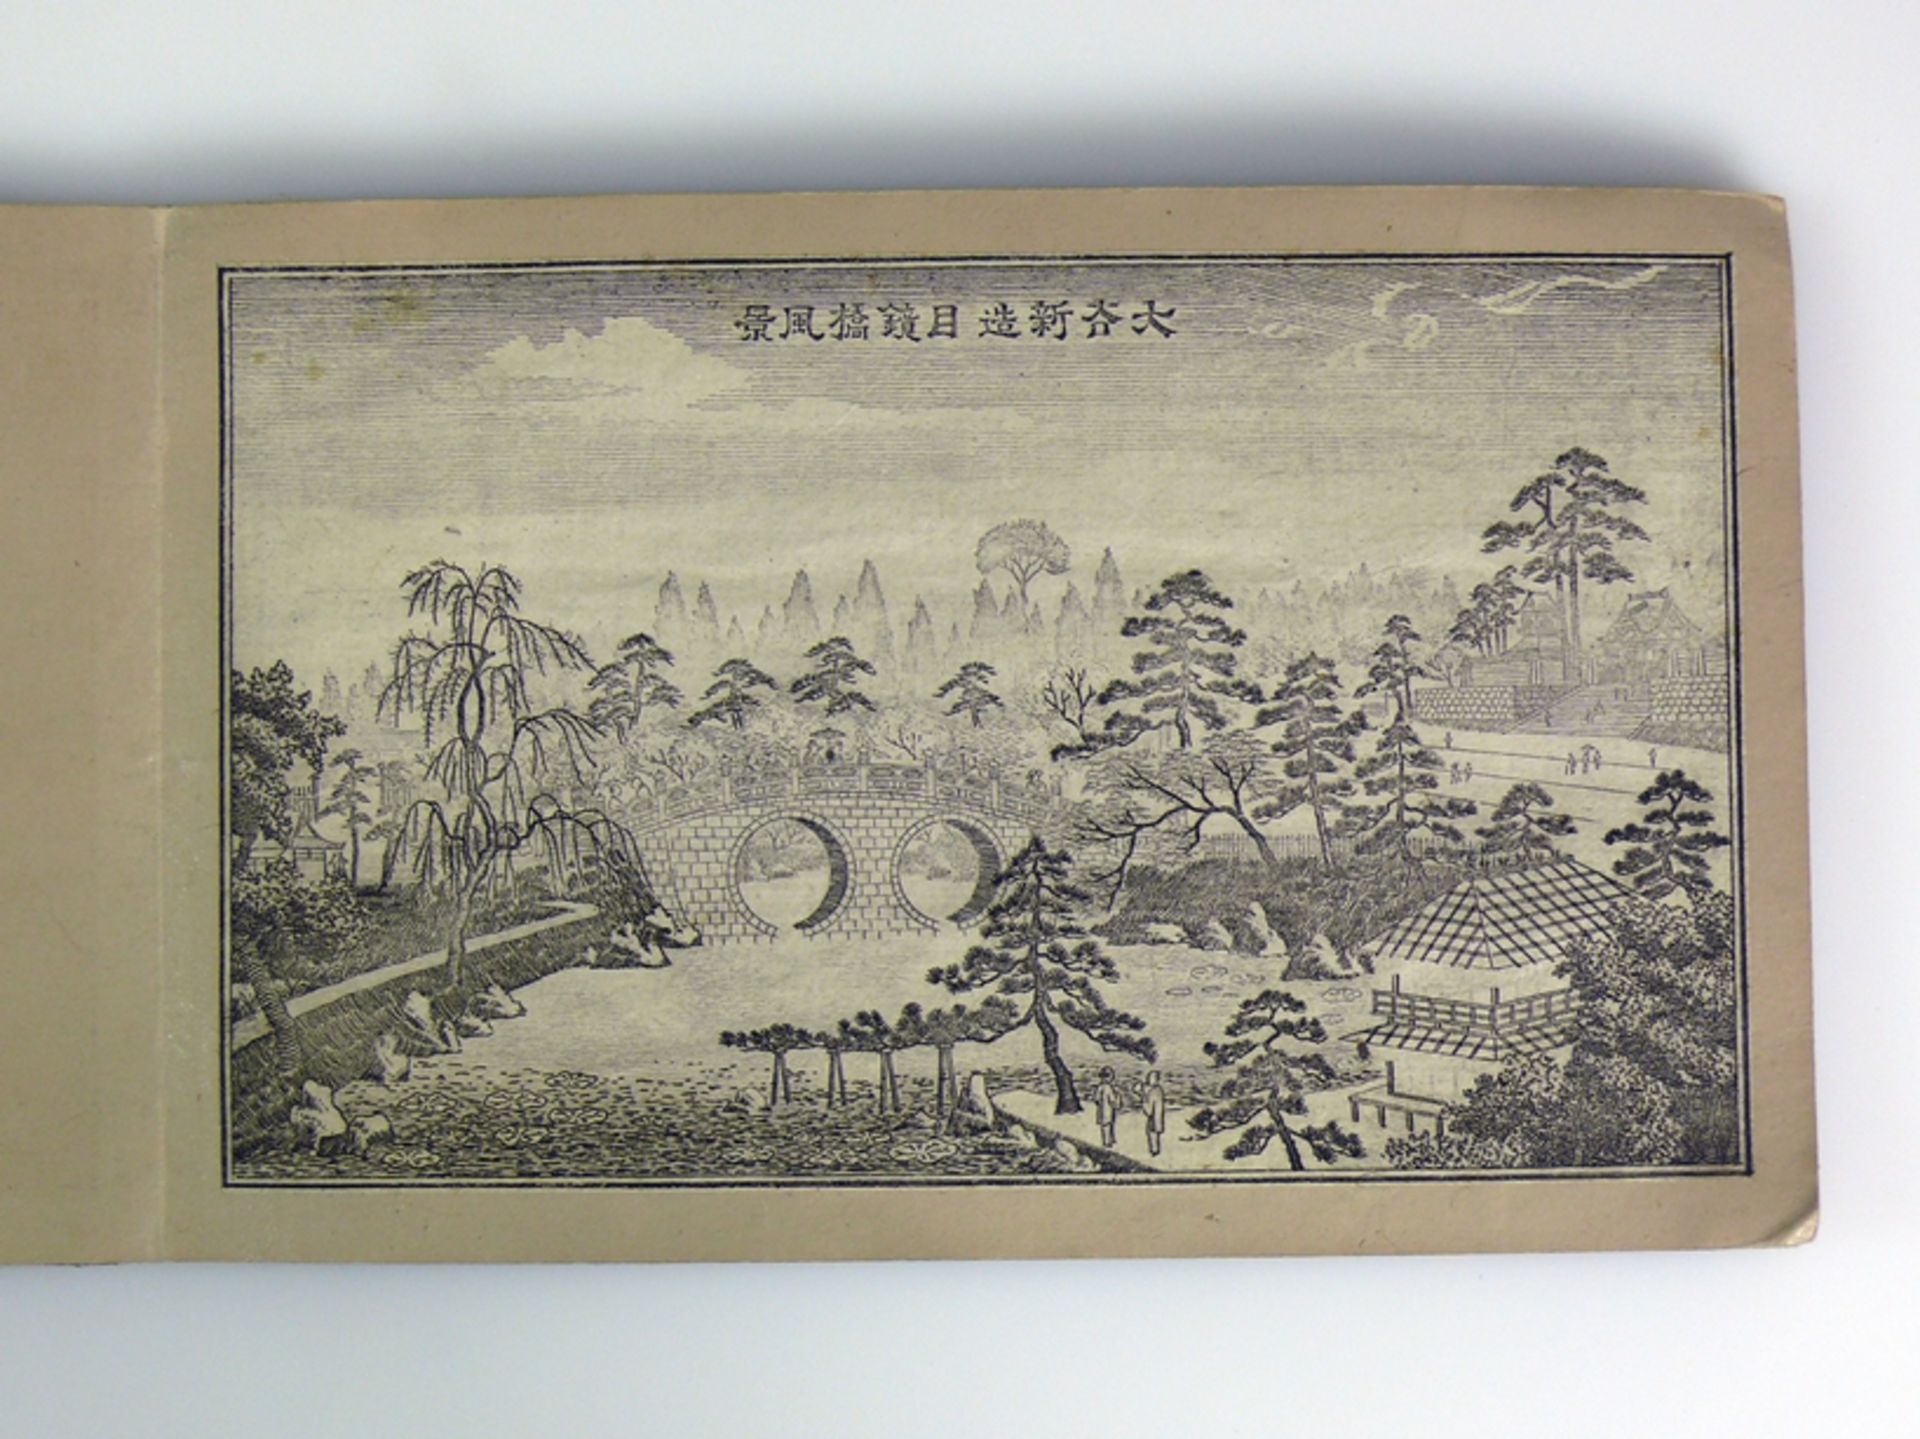 Kleines Buch (China, vor 1840, Qianlong-Daogung) - Image 13 of 22